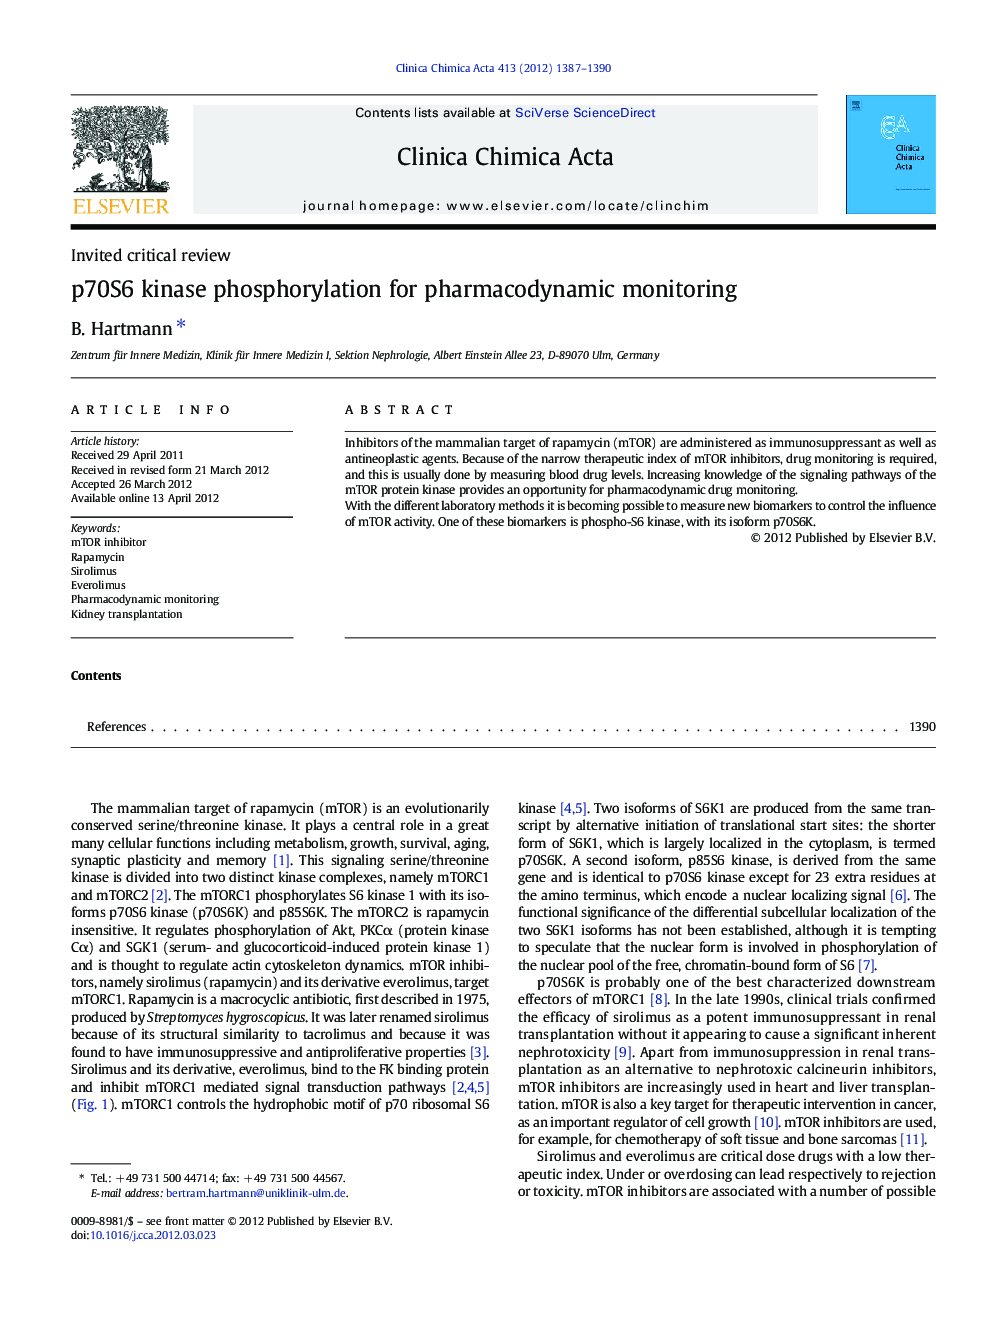 p70S6 kinase phosphorylation for pharmacodynamic monitoring